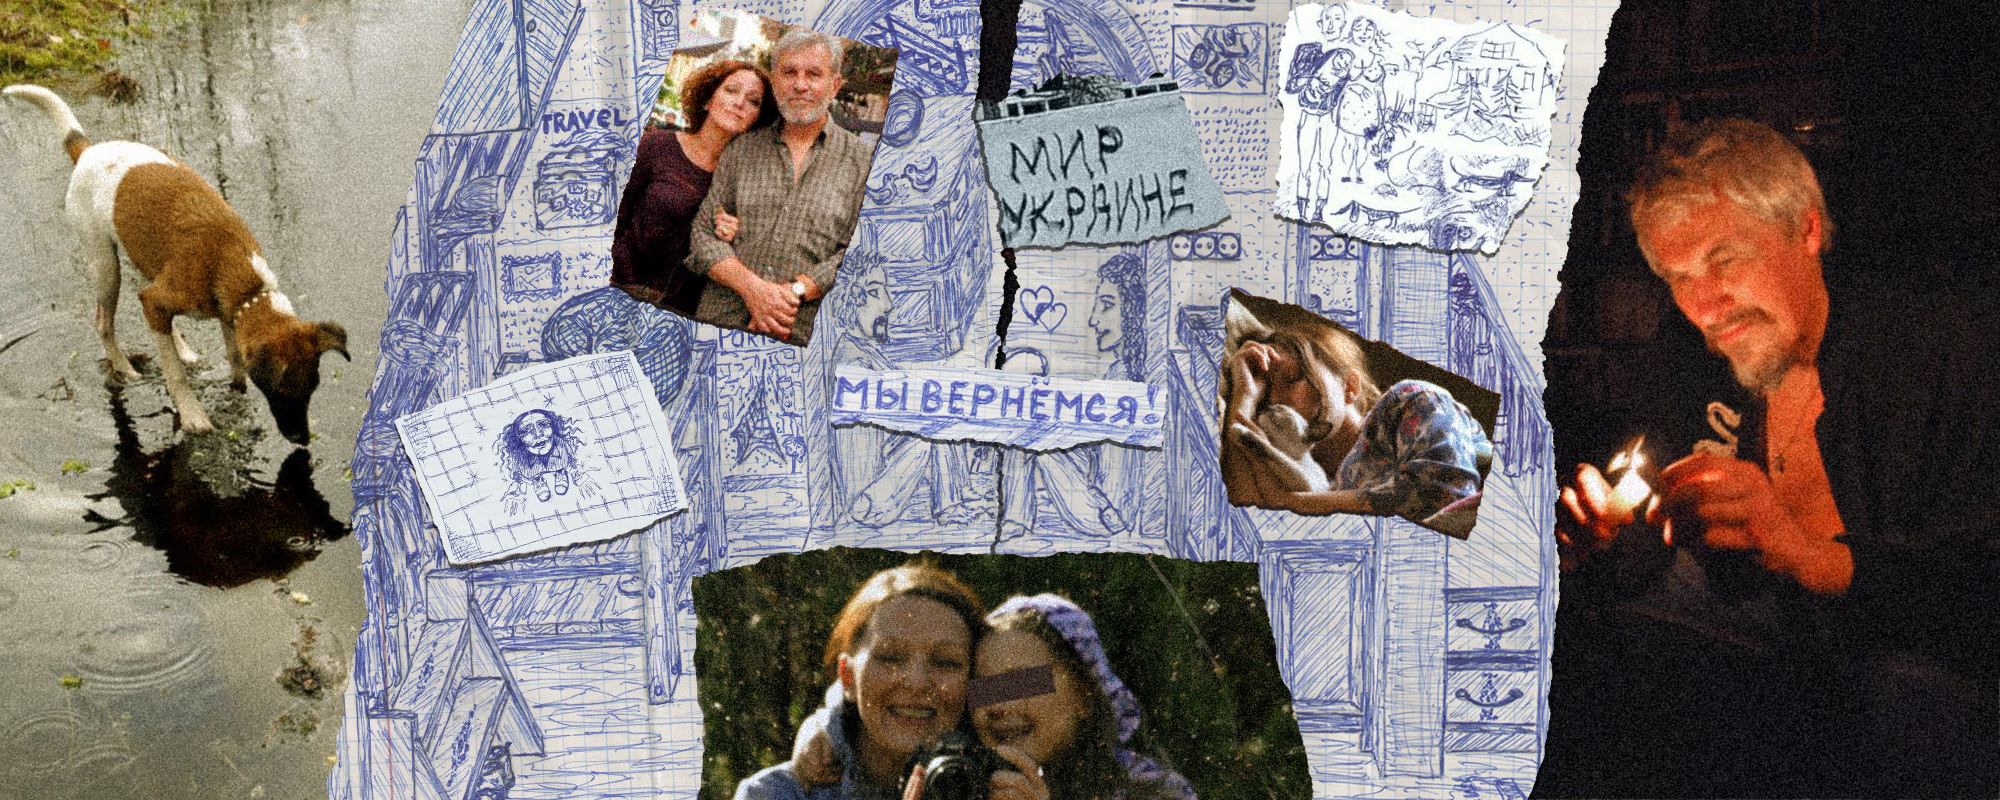 Коллаж ОВД-Инфо на основе фотографий и тюремных рисунков Людмилы Разумовой и Александра Мартынова